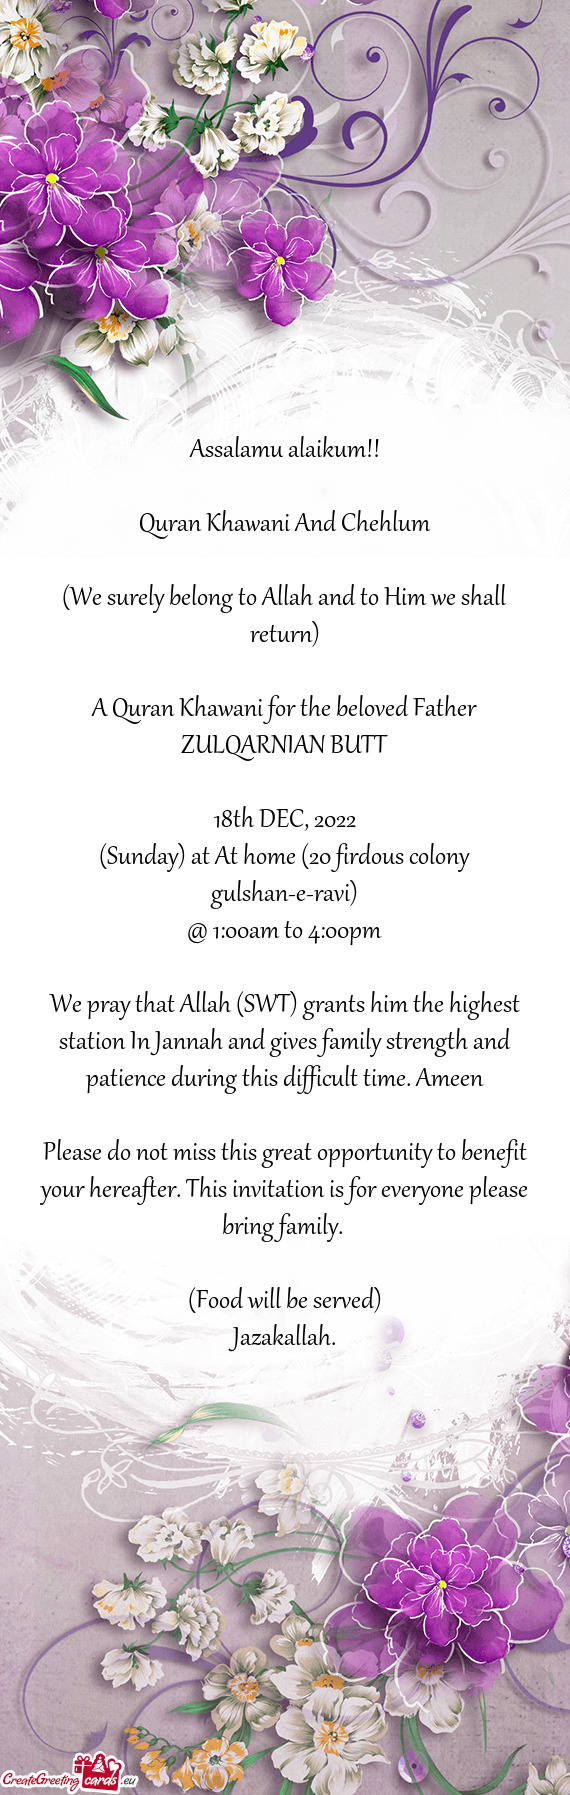 A Quran Khawani for the beloved Father ZULQARNIAN BUTT